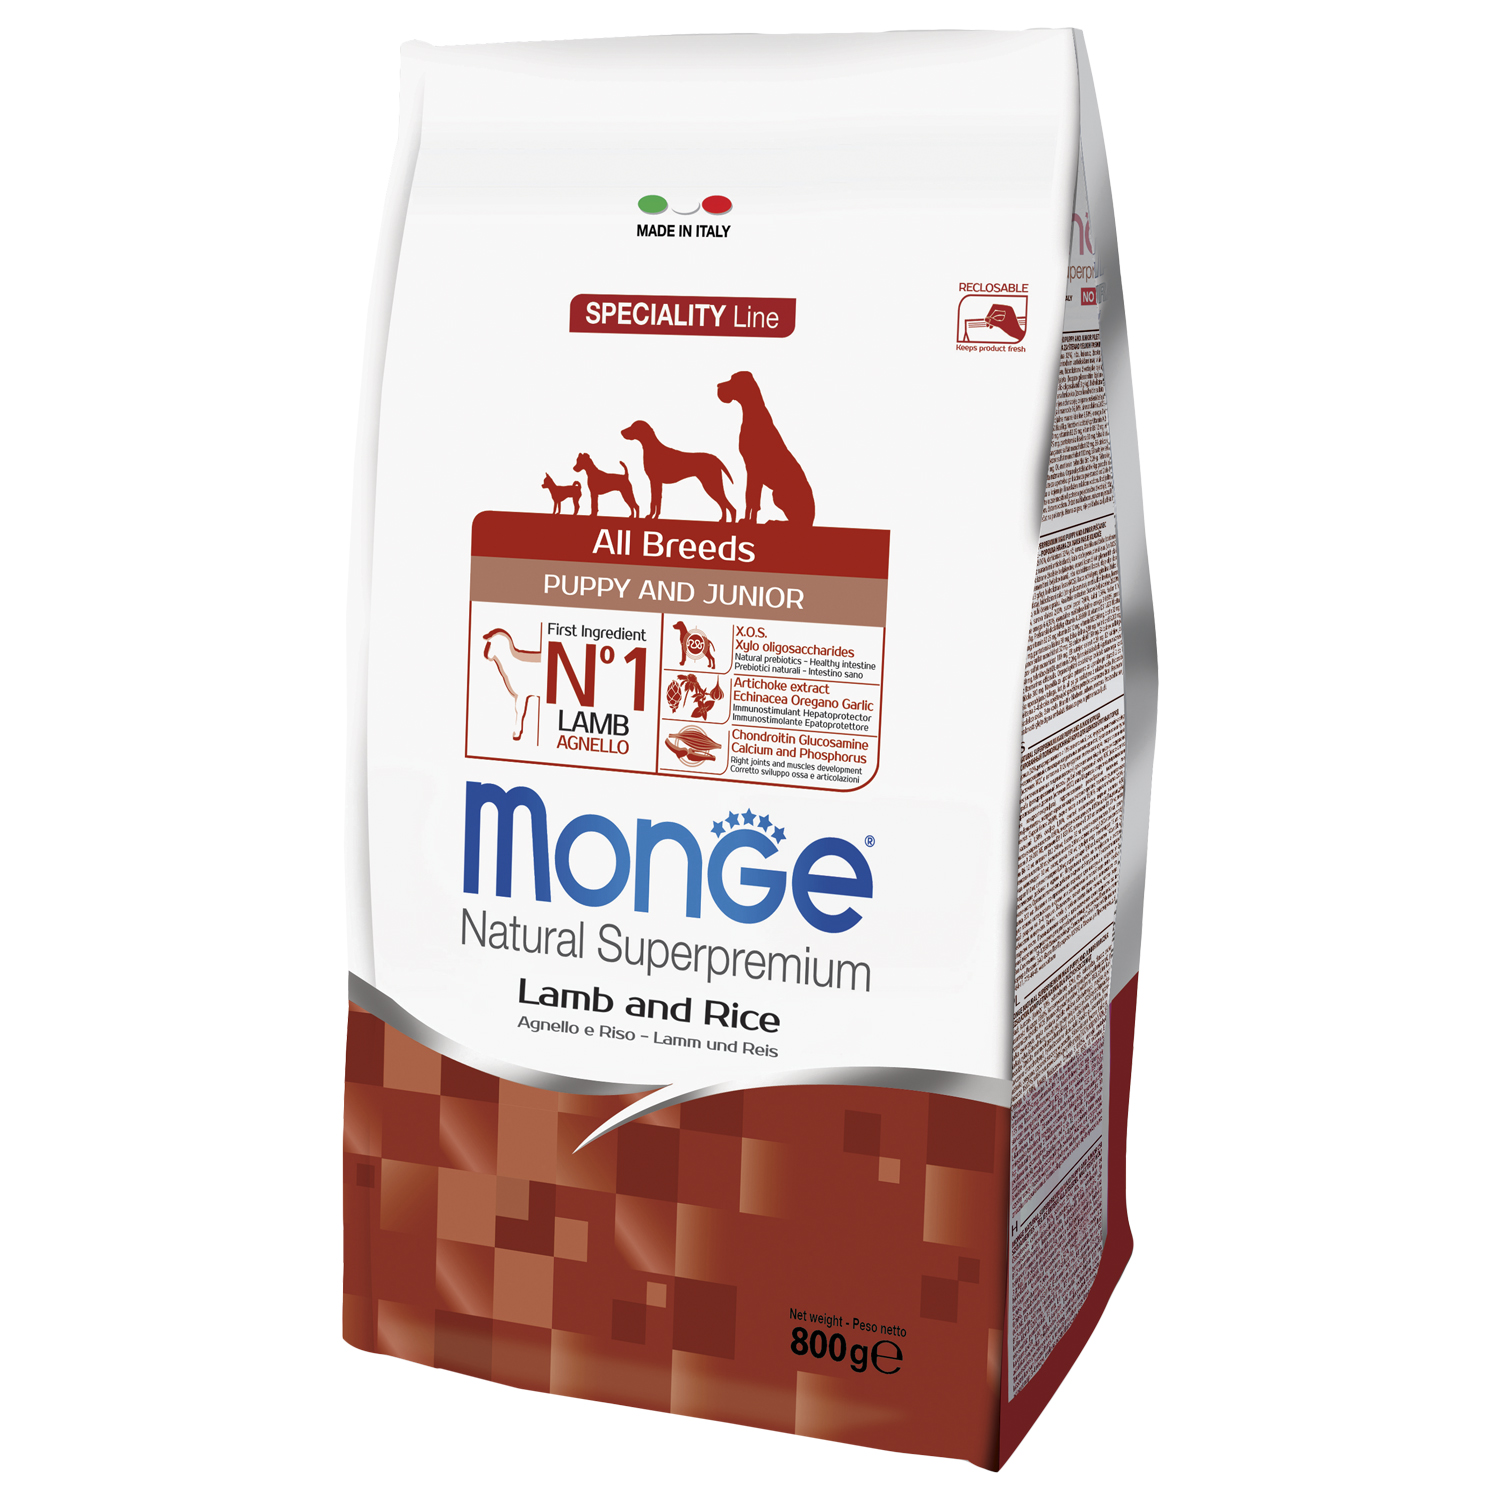 Cухой корм Monge Dog Speciality Line Puppy&Junior корм для щенков всех пород, из ягненка с рисом 800 г